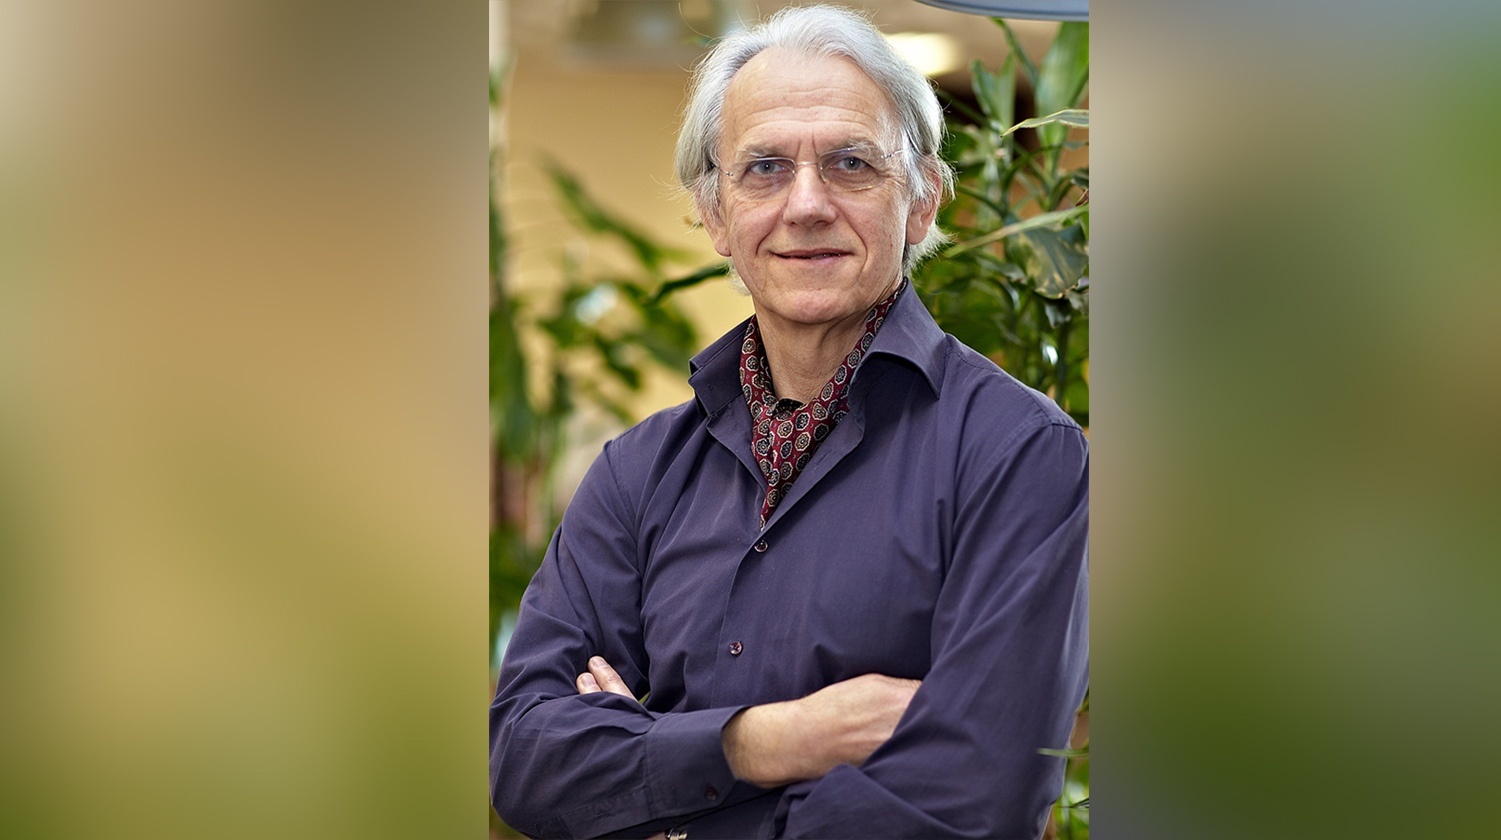  Жерар Муру – визнаний французький дослідник квантової електроніки